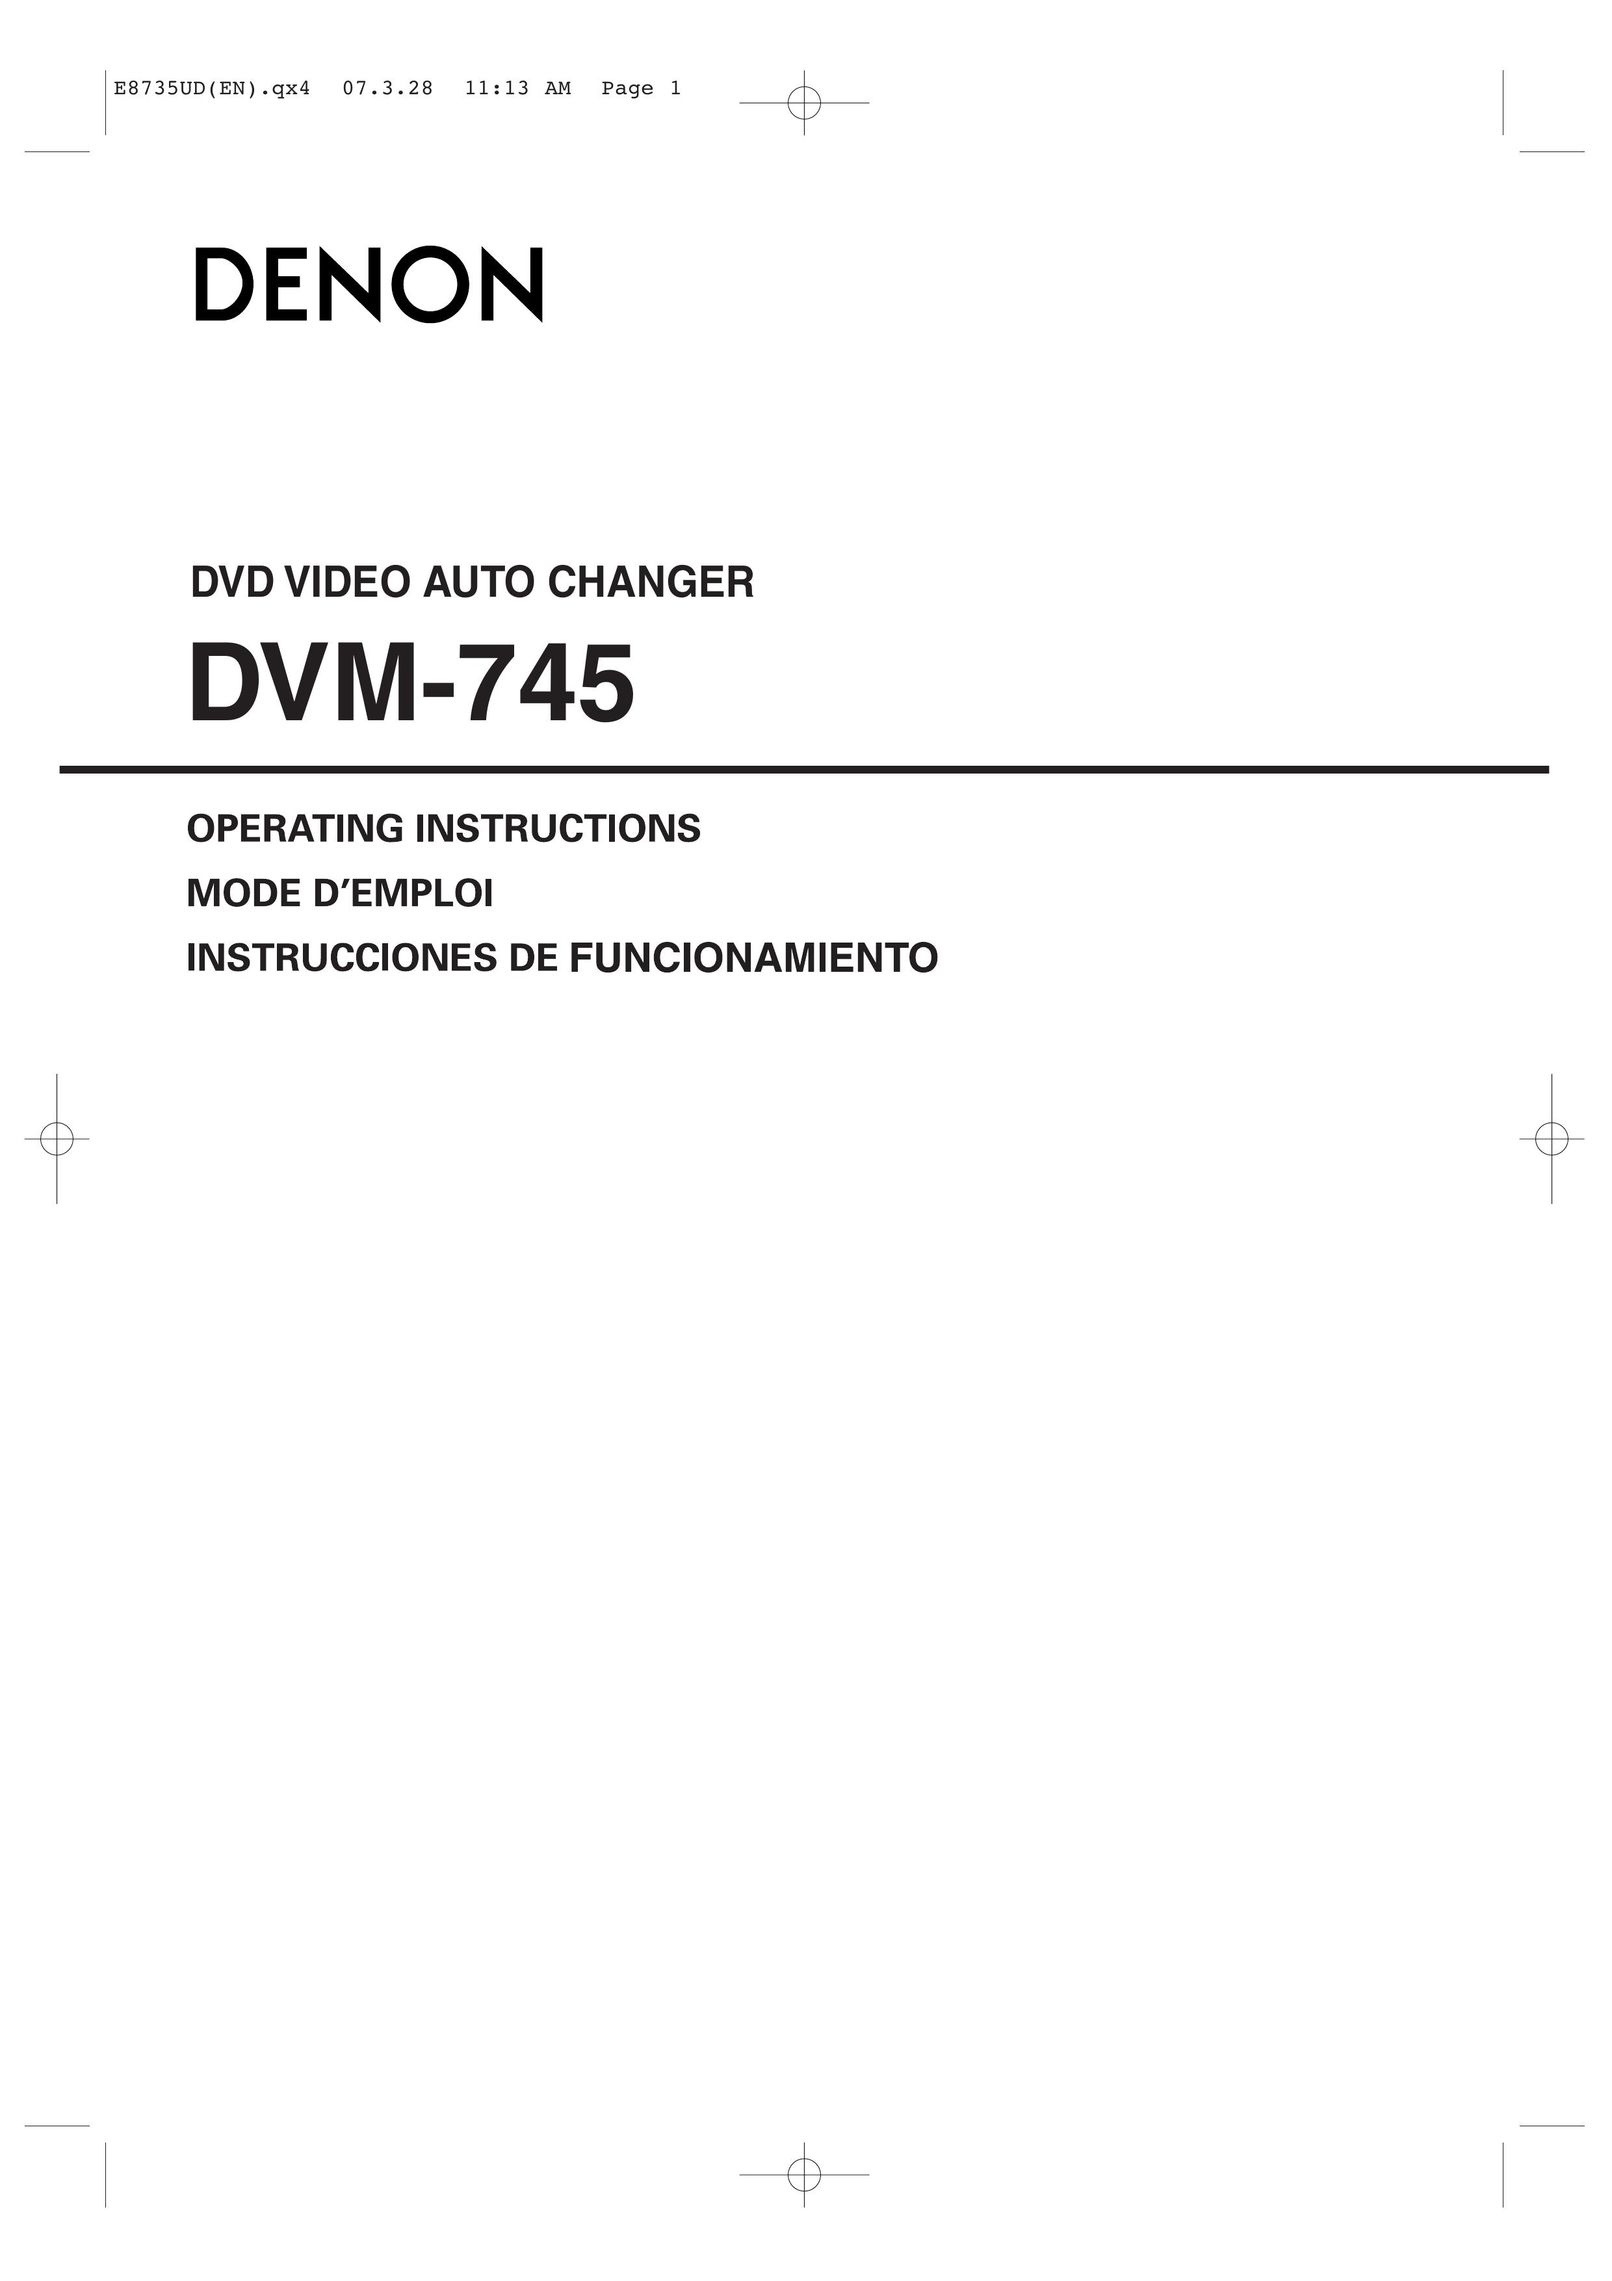 Denon DVM-745 Portable DVD Player User Manual